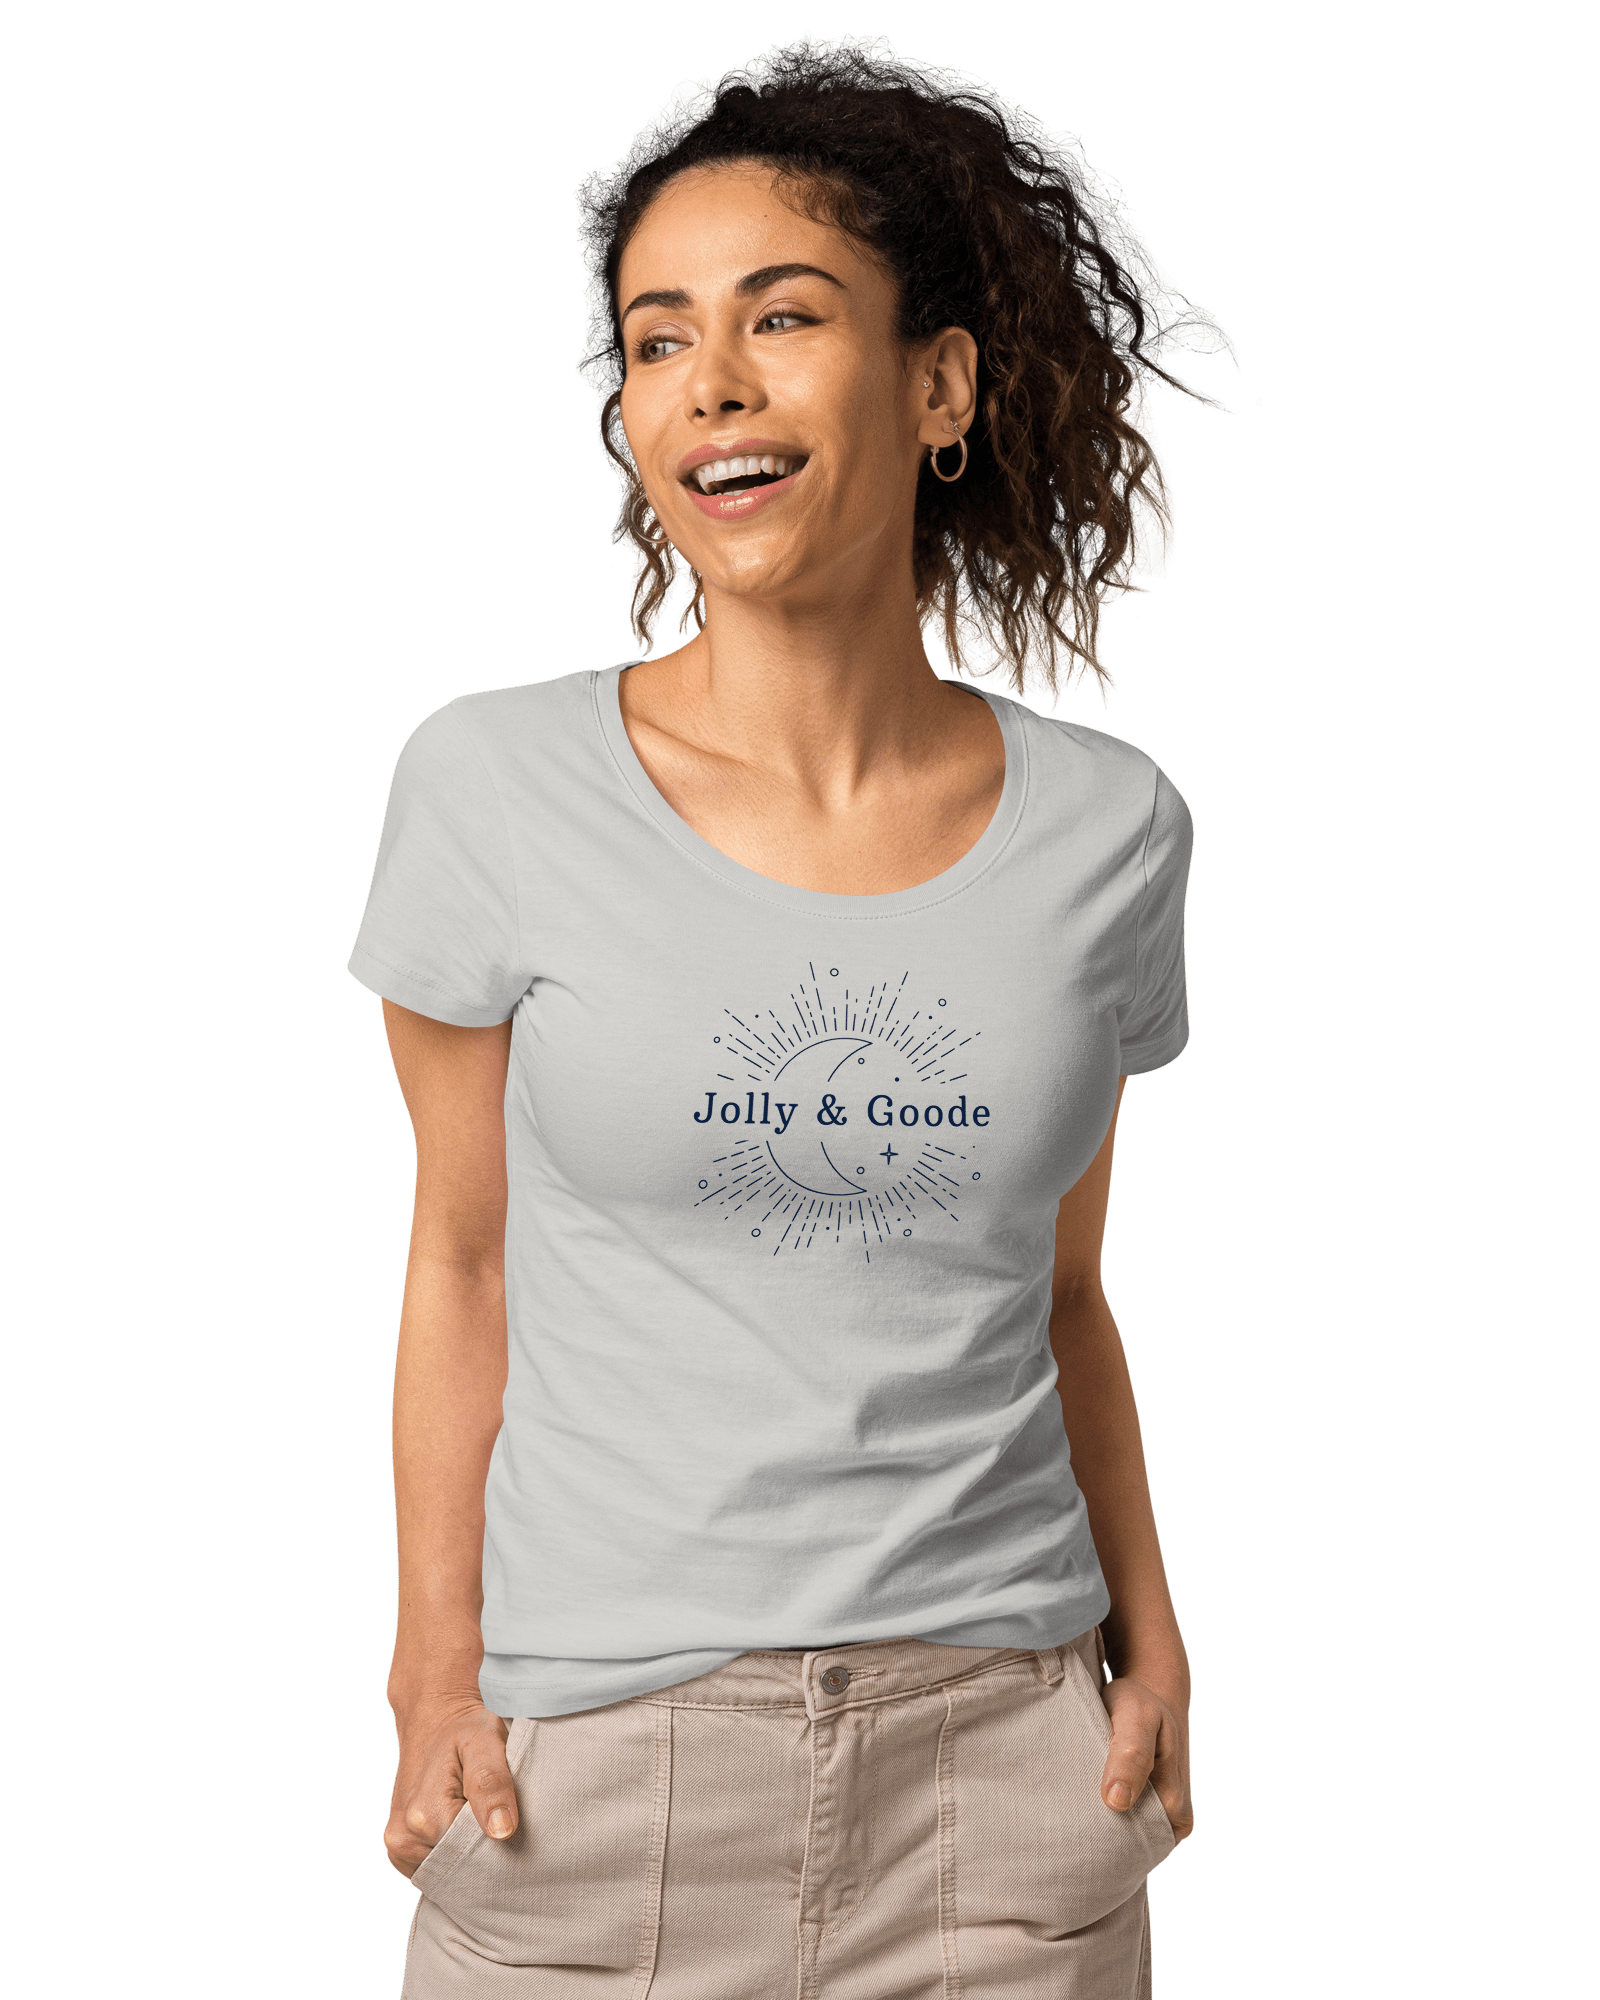 Jolly & Goode | Women’s Organic T-shirt Shirts & Tops Jolly & Goode